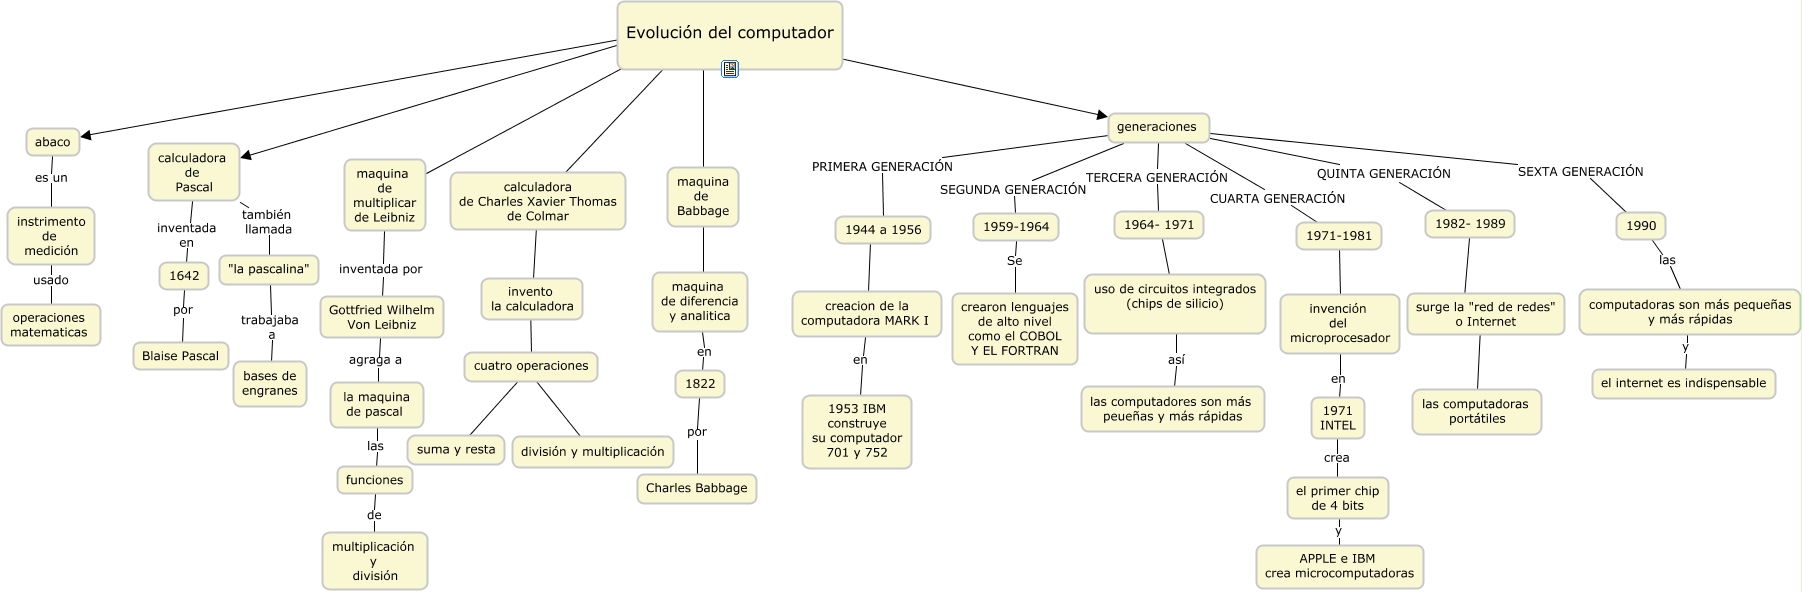 mapa conceptual evolucion del computador